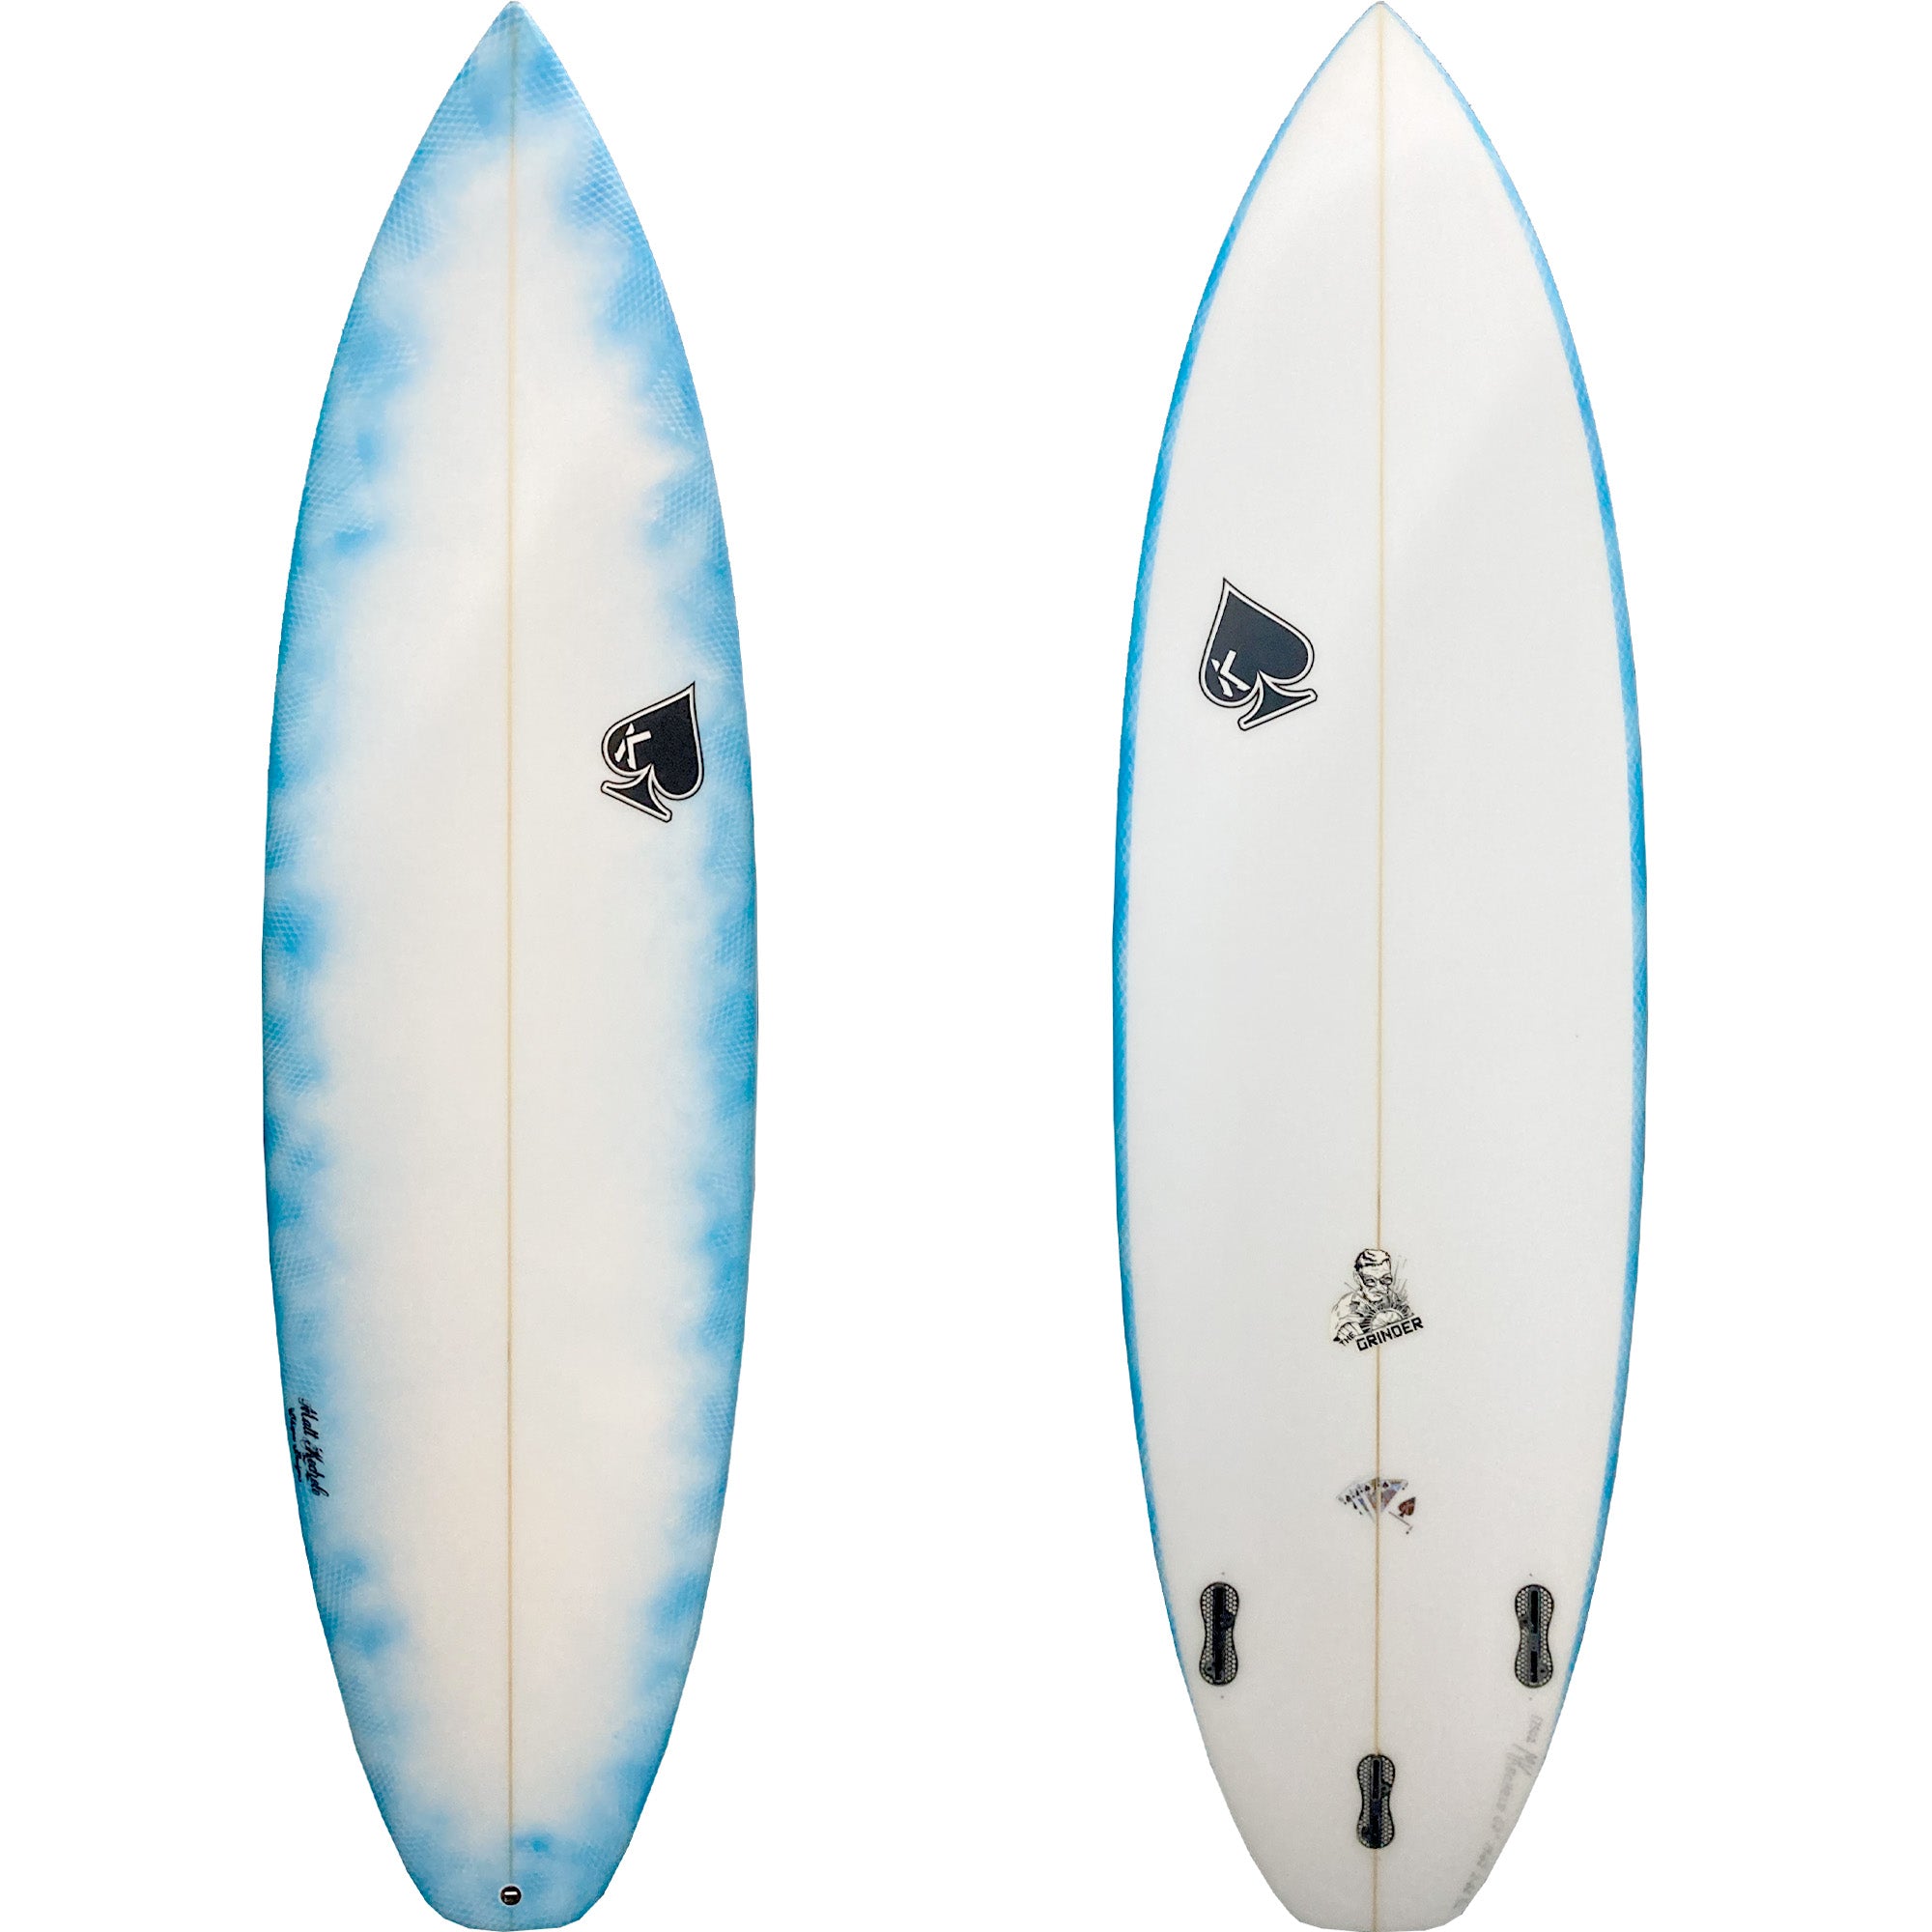 Kechele Grinder Surfboard - FCS II